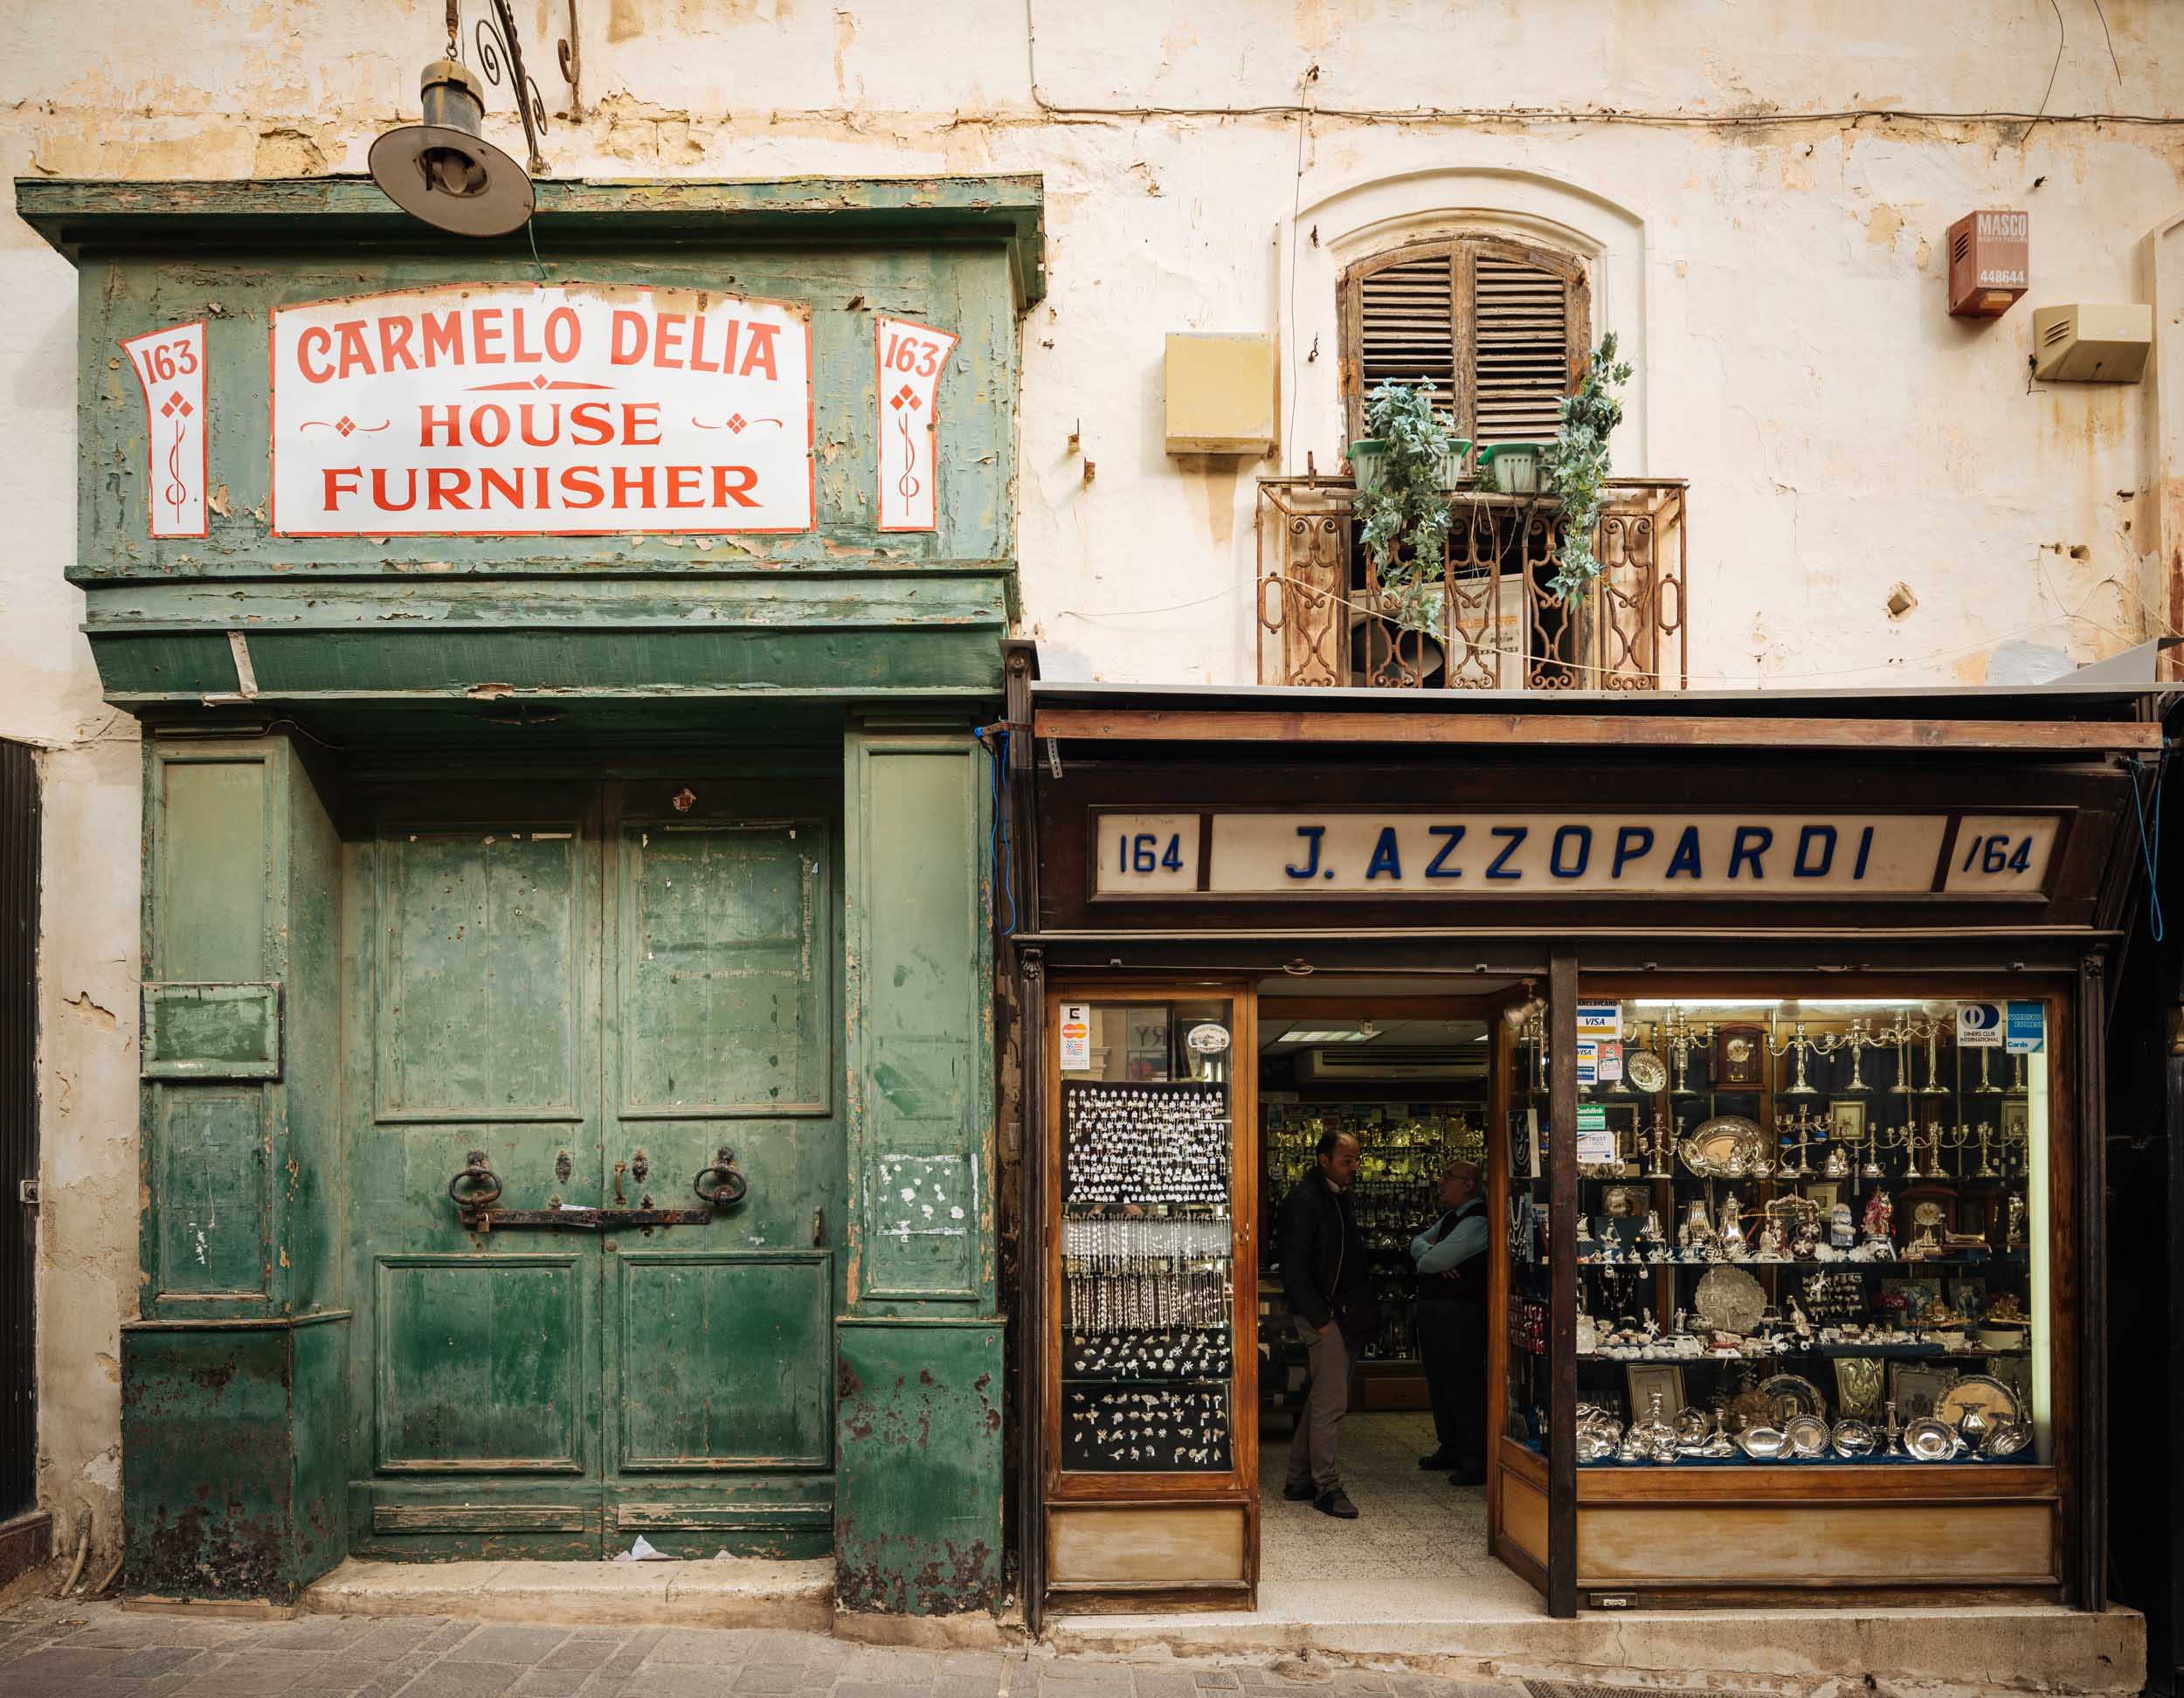 facade-shops-tradition-carmelo-delia-house-furnisher-valletta-malta